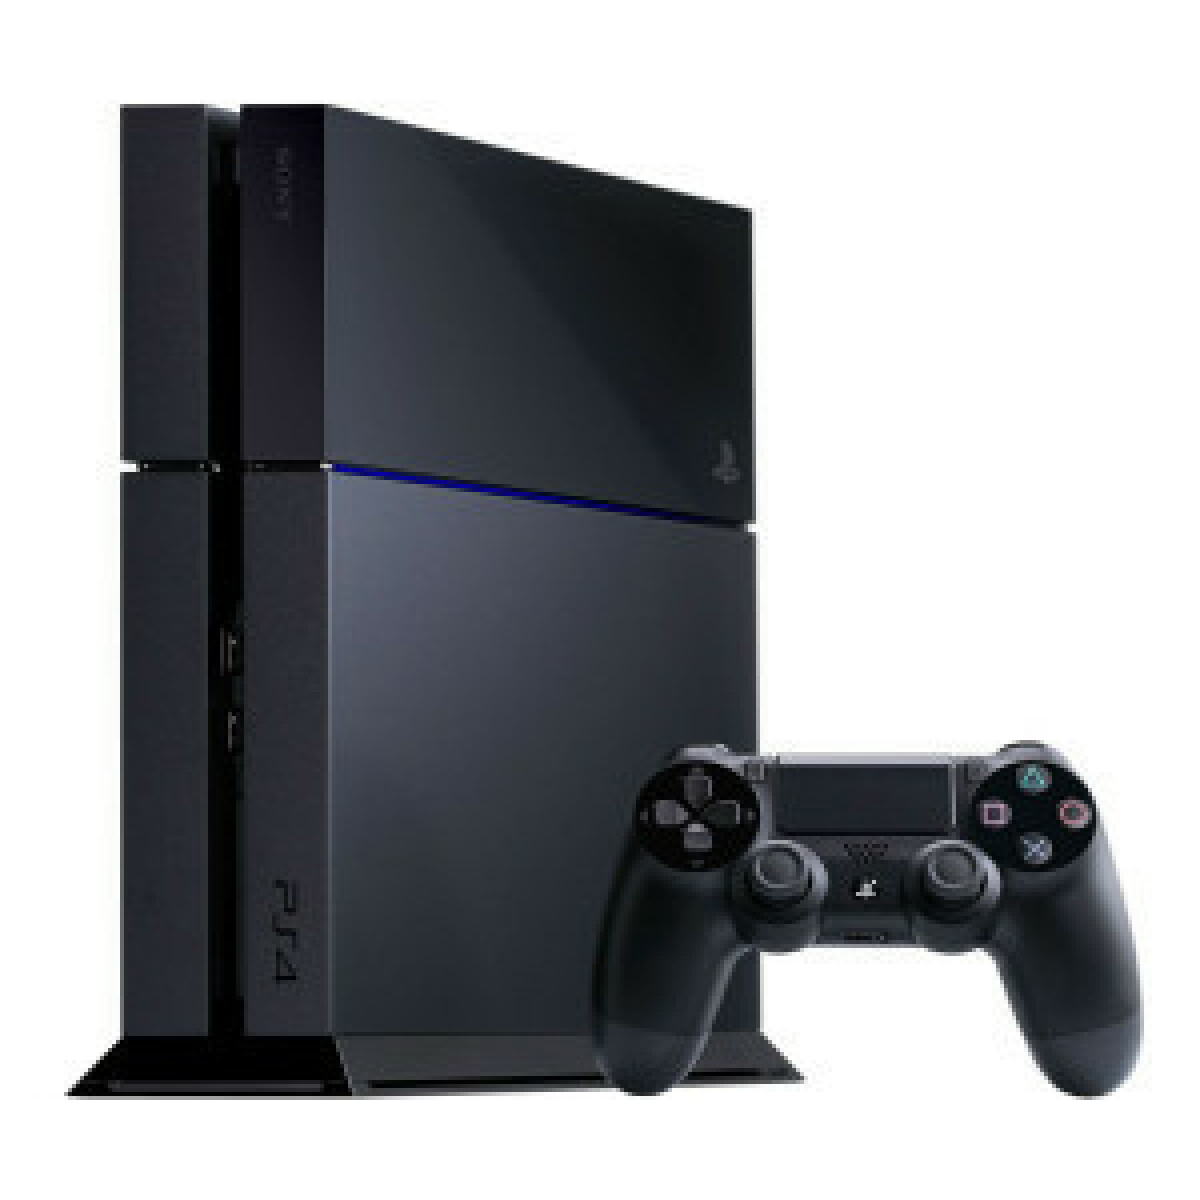 Console PS4 Slim 500 Go Noire/Jet Black + FIFA 21 Jeu PS4 + Points FUT + 14 Jours PS Plus - PlayStation Officiel